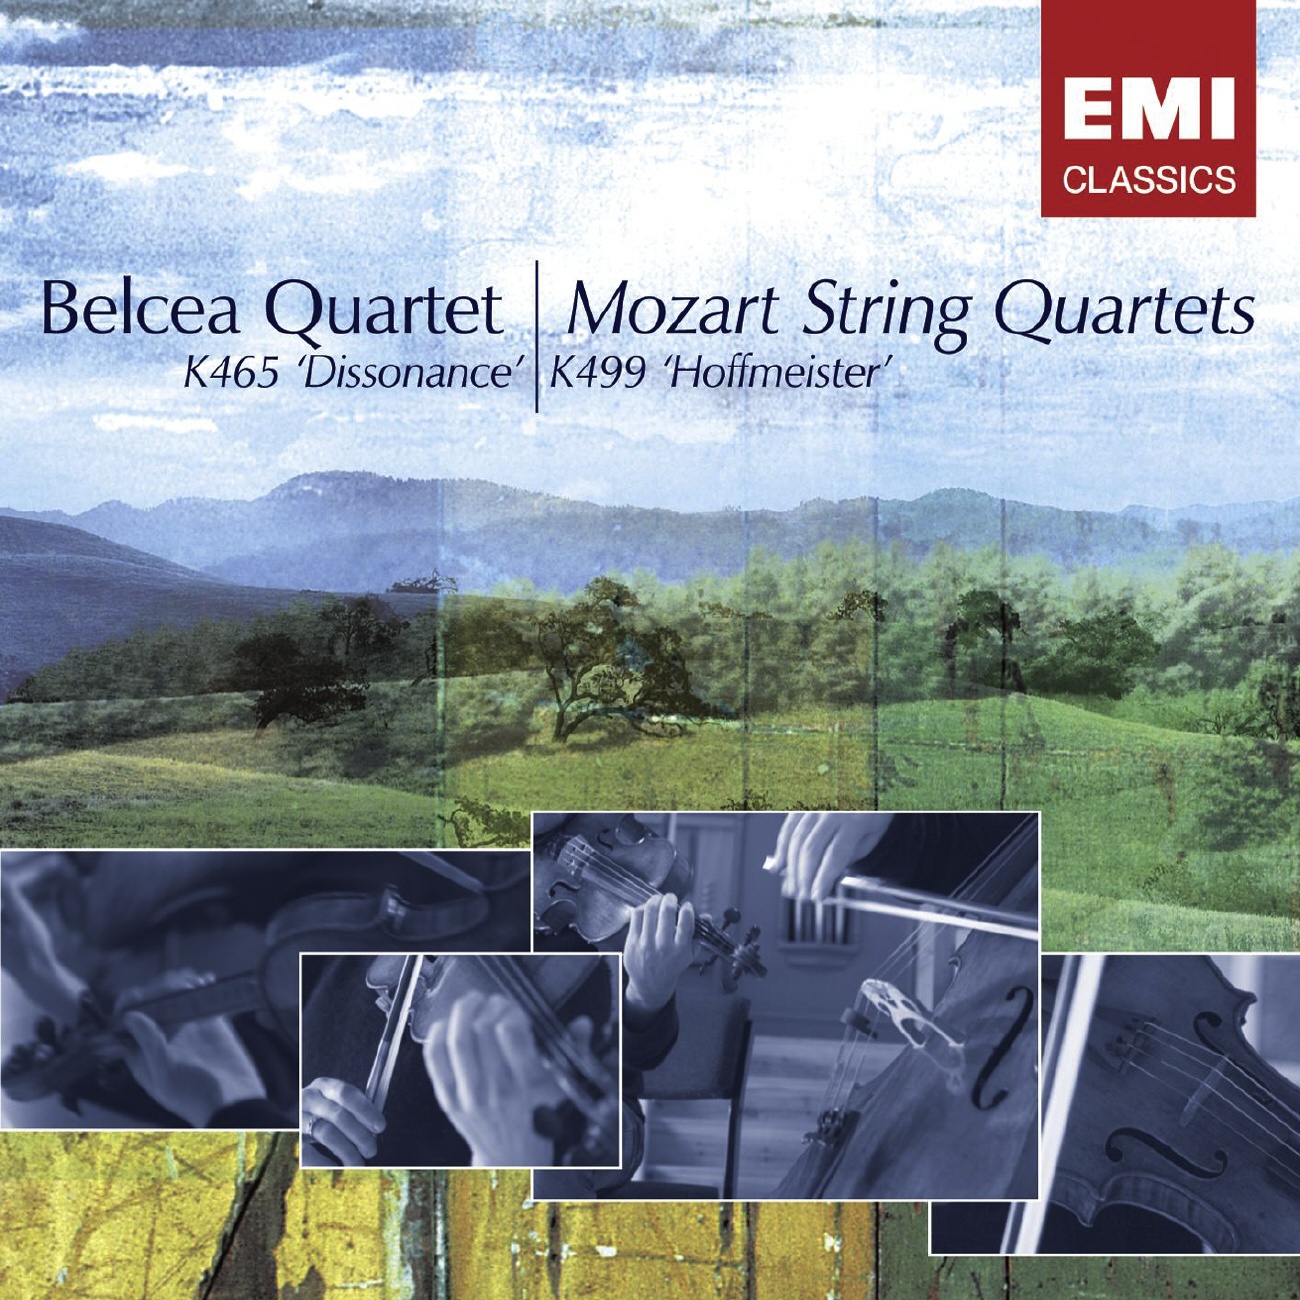 String Quartet in D major, K.499 (Hoffmeister): I.    Allegretto